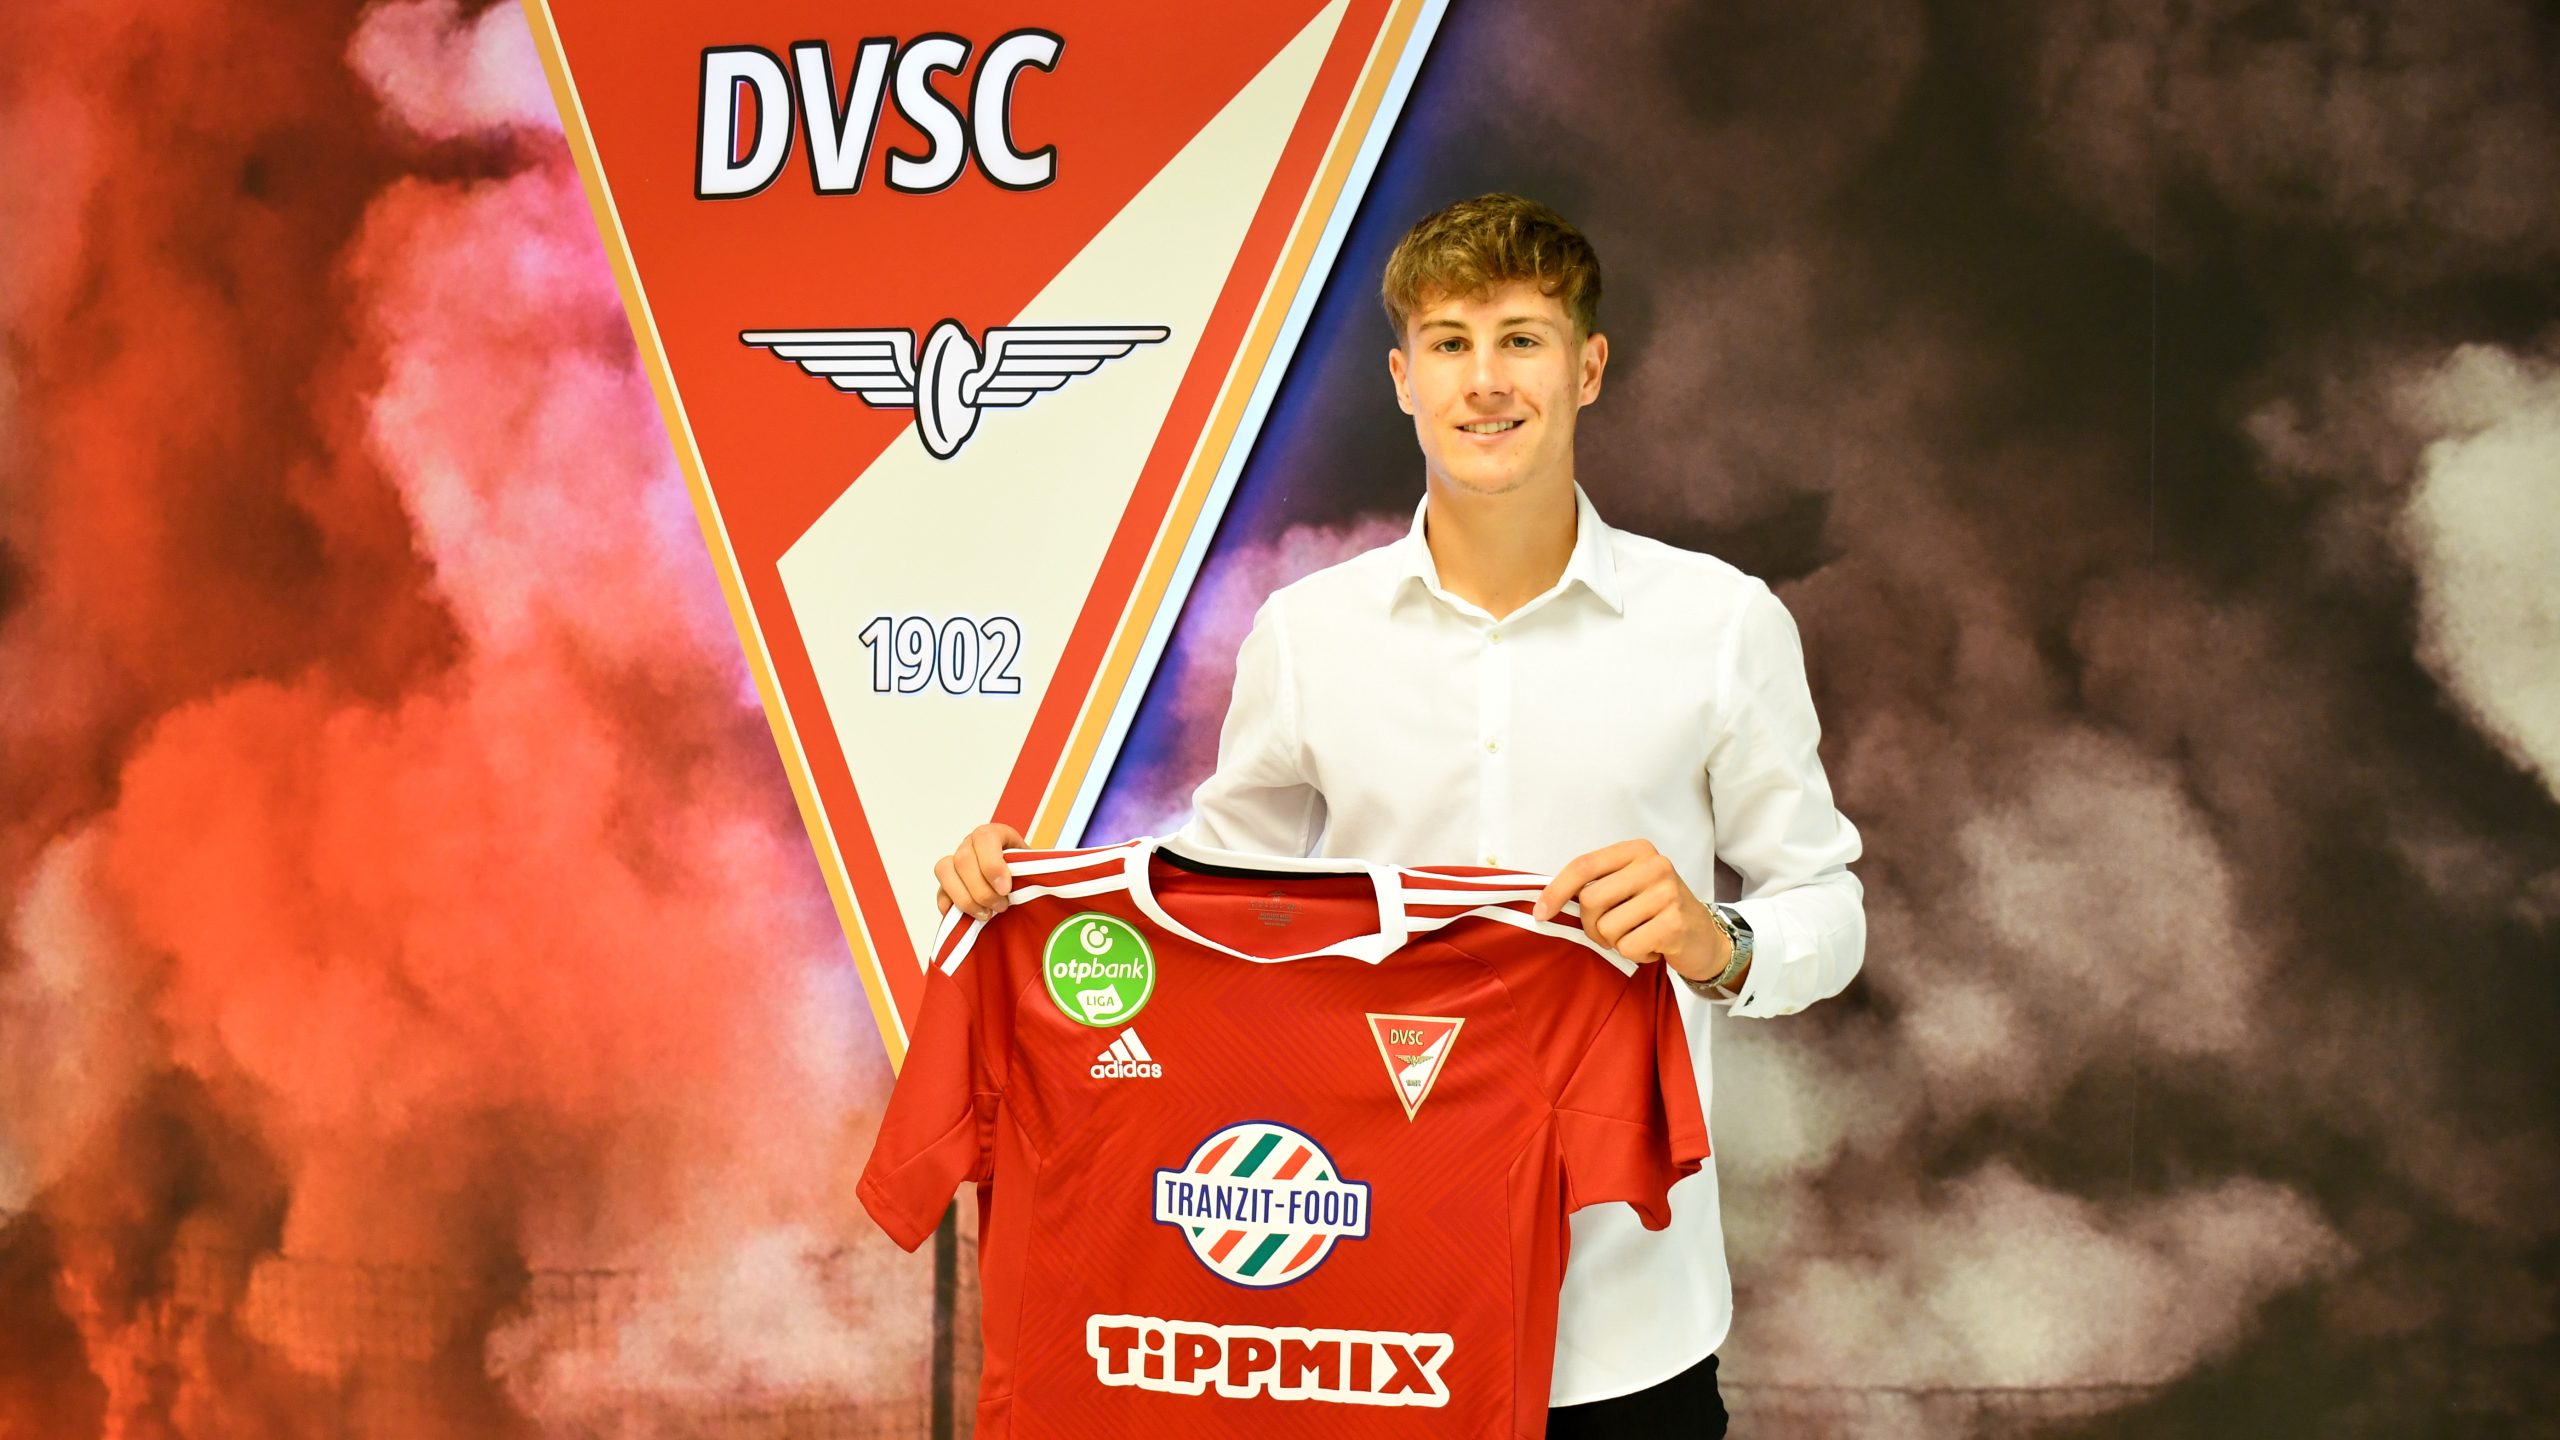 Máté Tuboly continues his career in Debrecen - DVSC Futball Zrt.